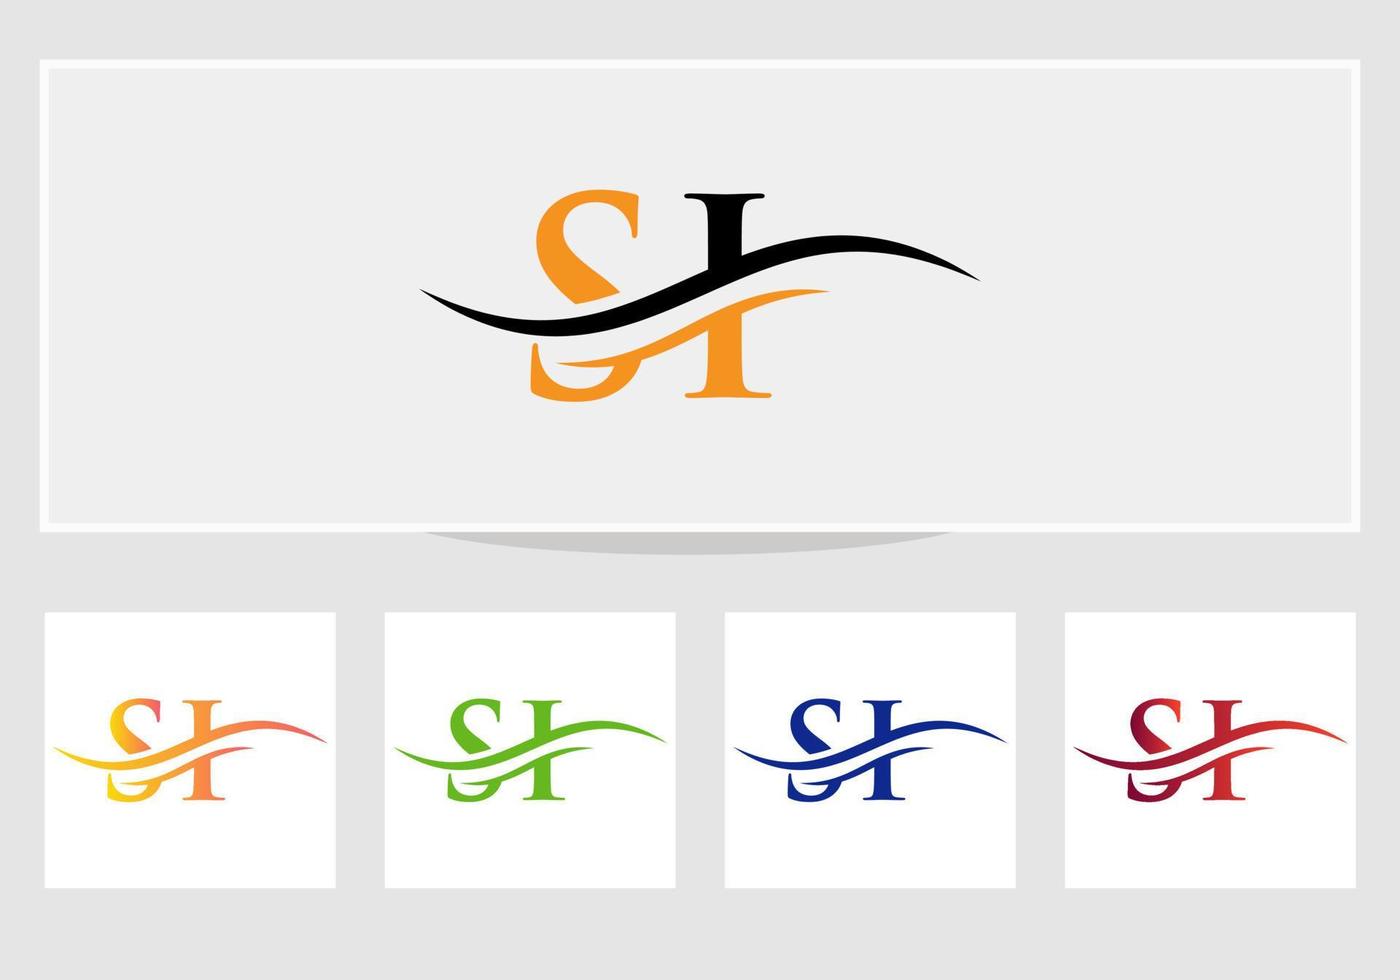 création initiale du logo si de la lettre liée. vecteur de conception de logo lettre si moderne avec tendance moderne